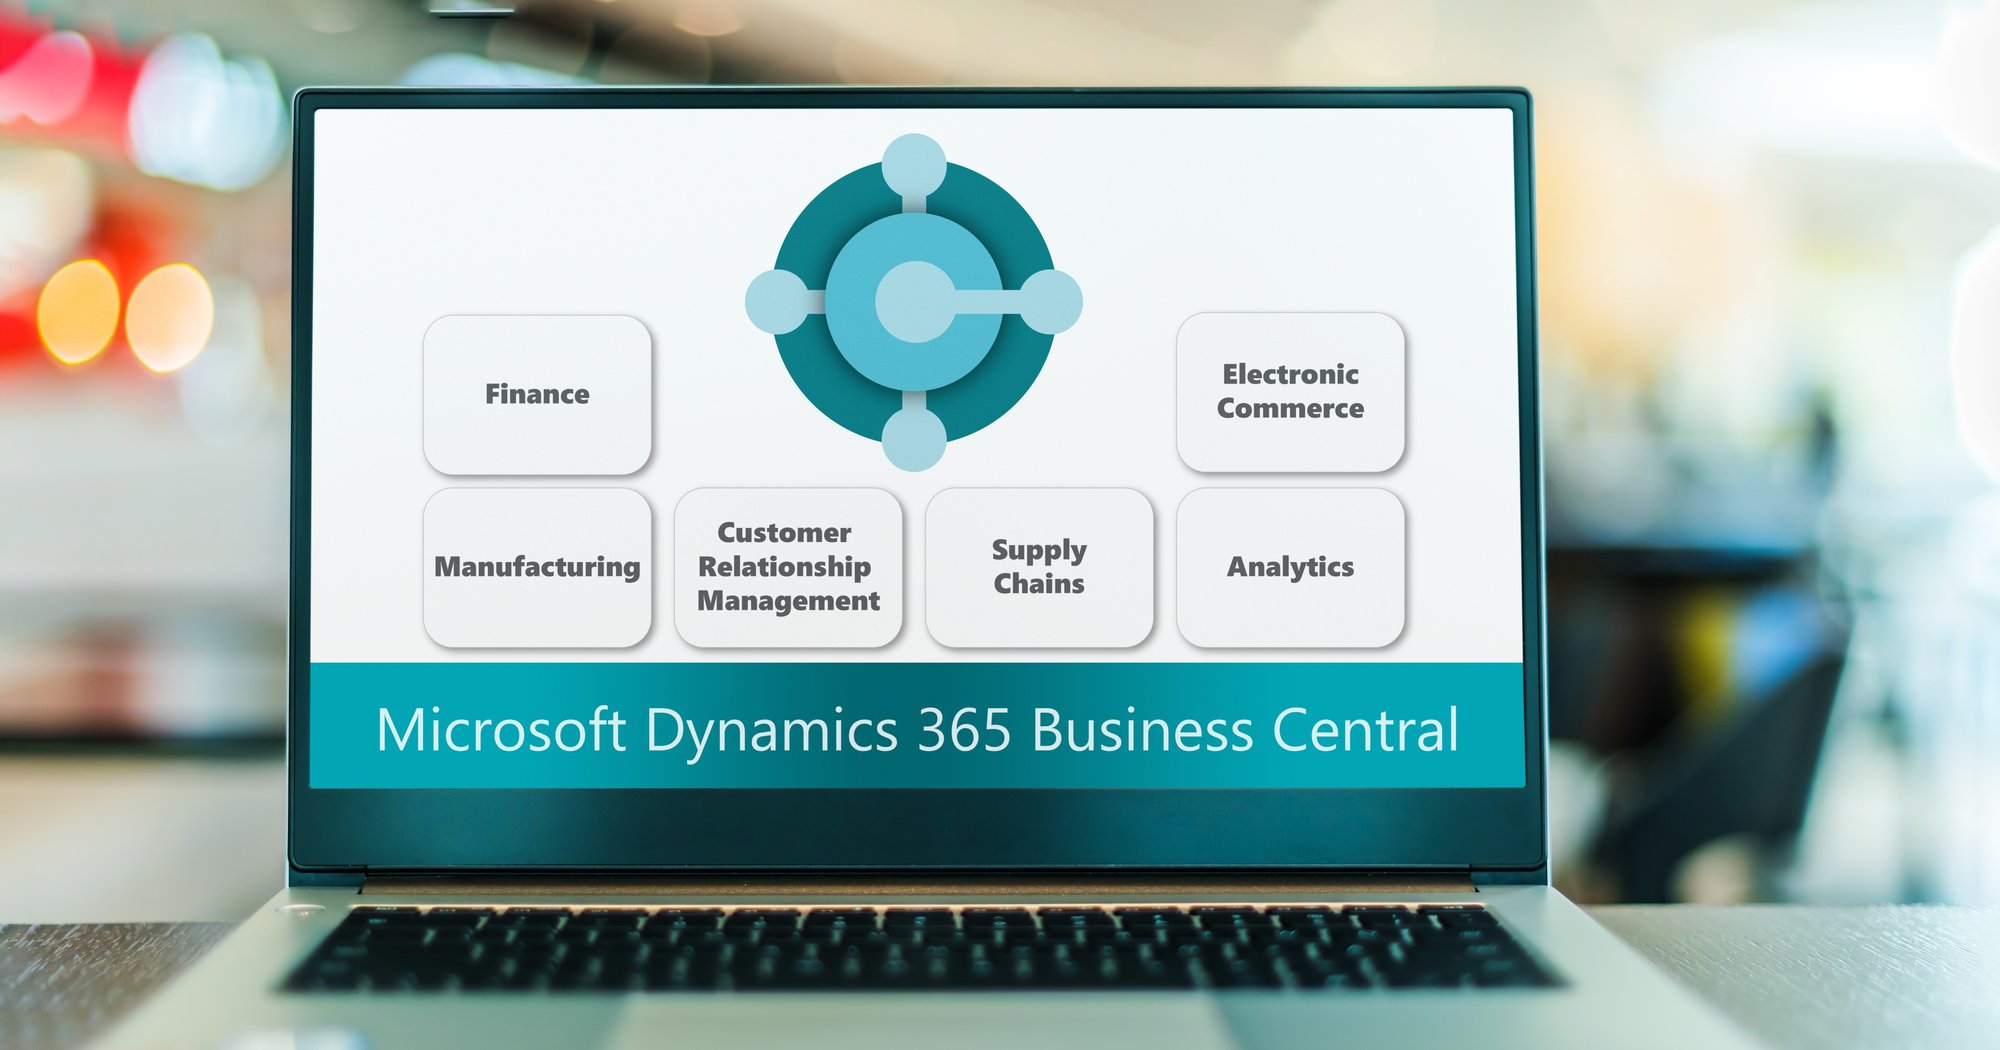 Dynamics 365 Business Central（中小企業向けのクラウド型ERPソリューション）とは